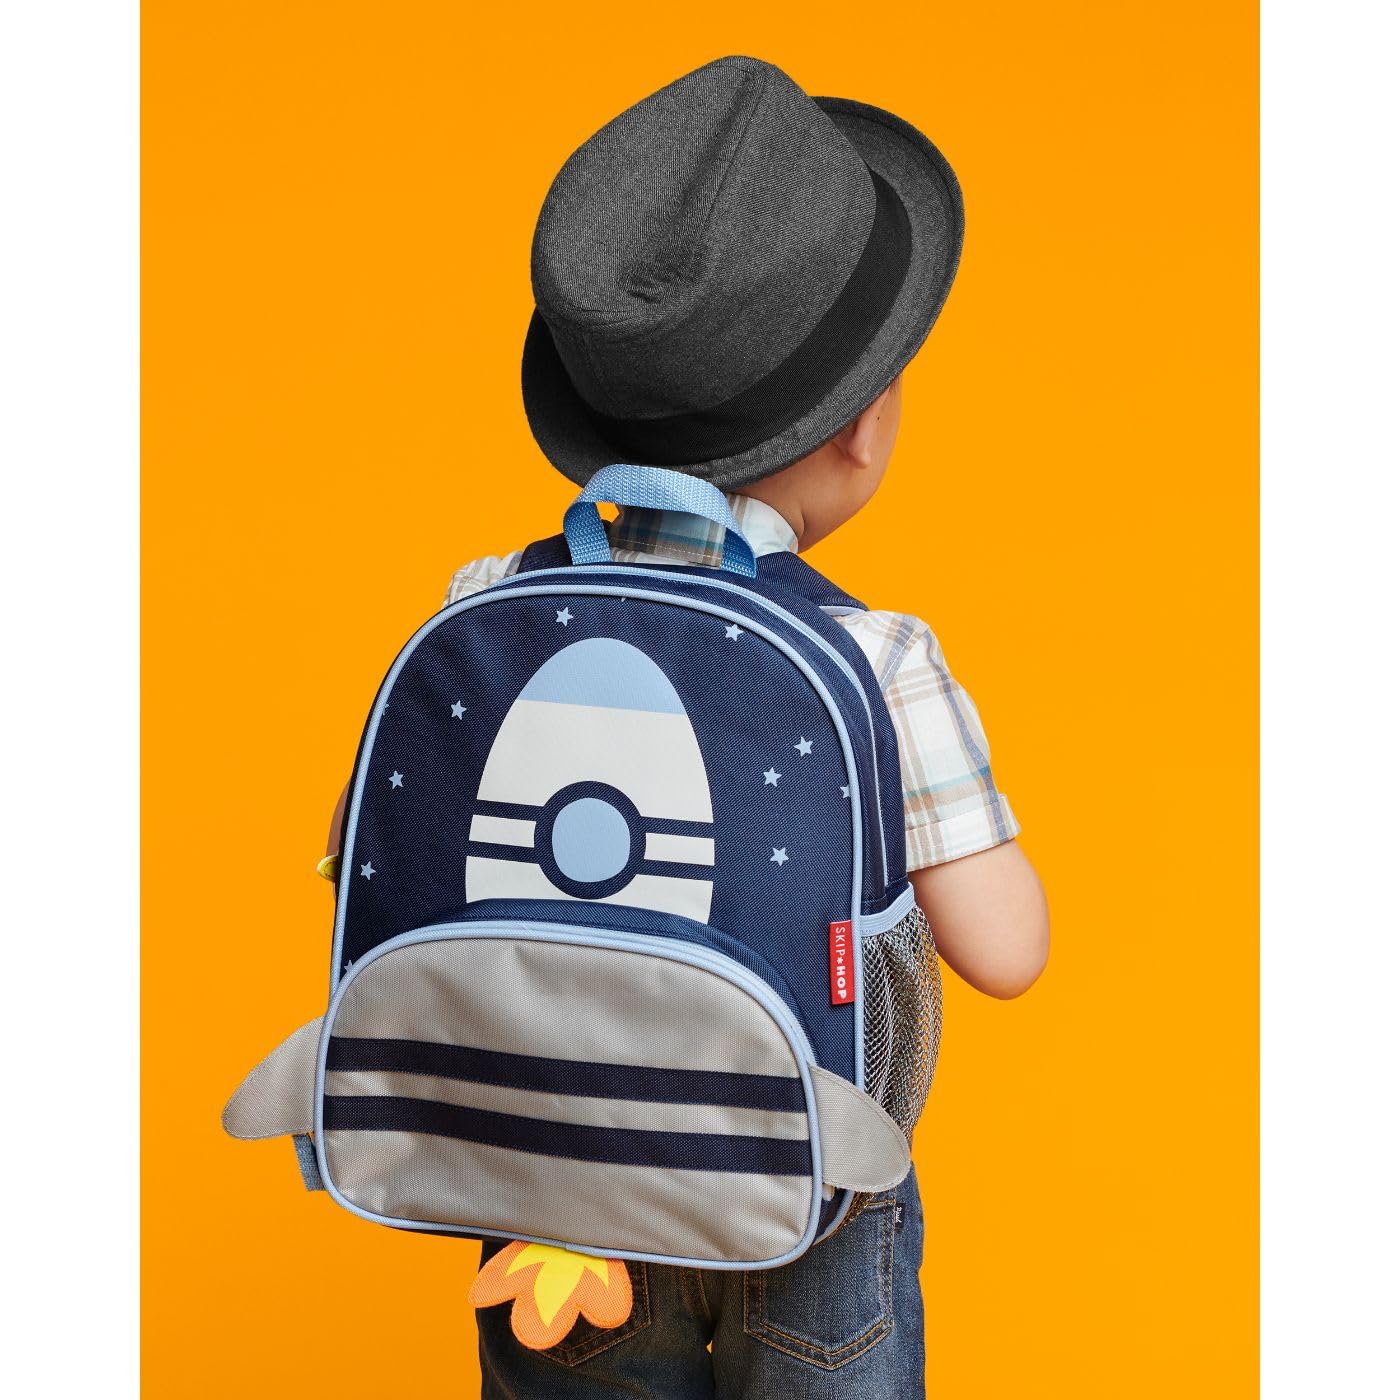 Skip Hop Sparks Little Kid's Backpack, Preschool Ages 3-4, Rocket